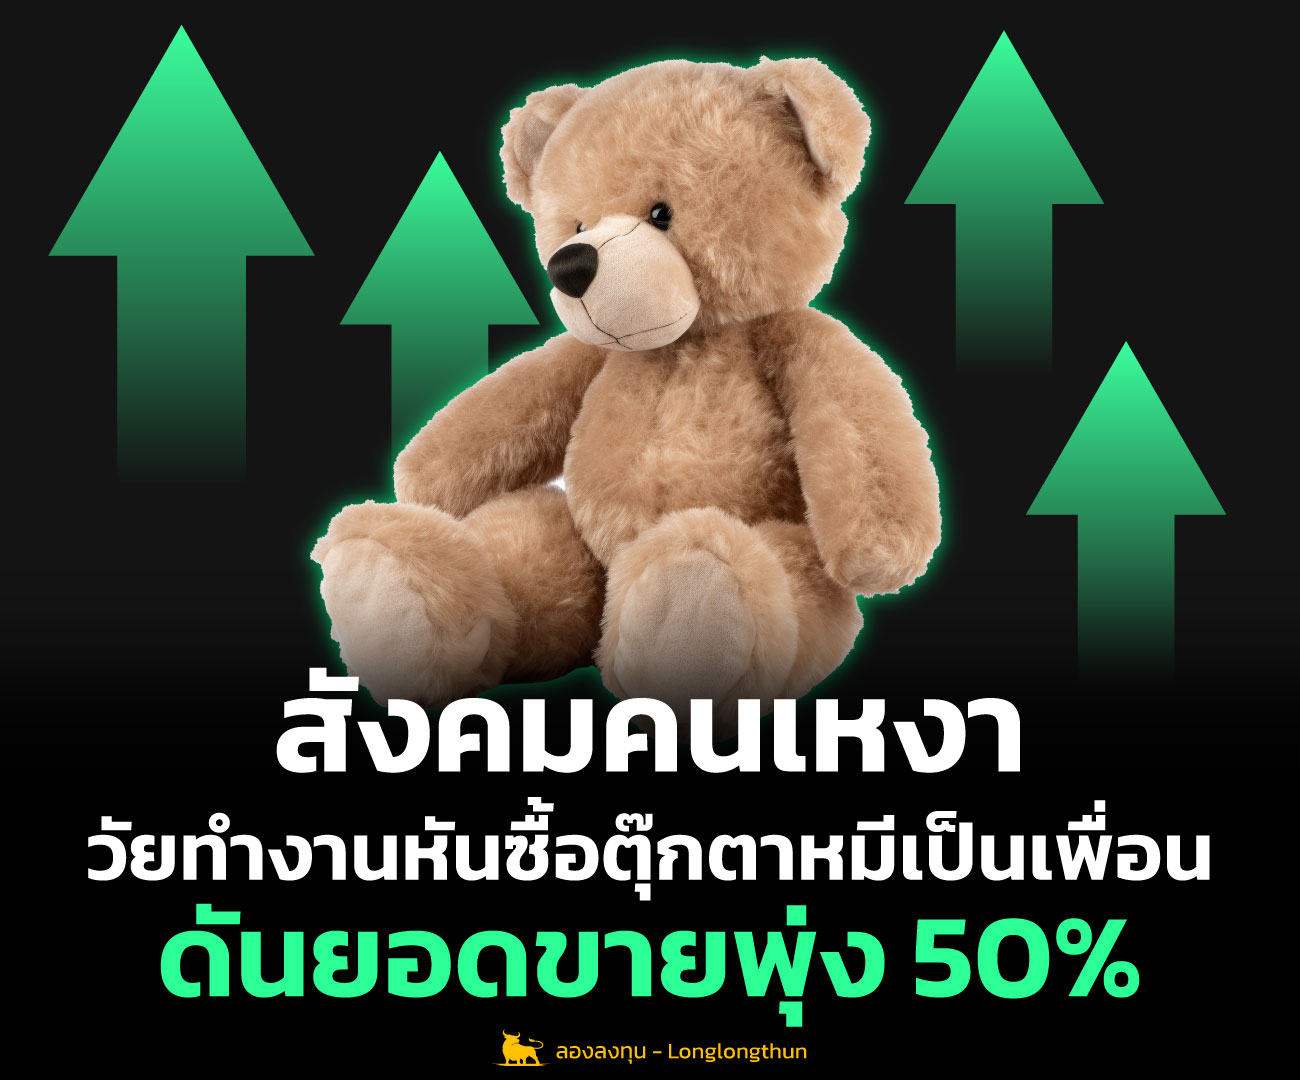 สังคมคนเหงา วัยทำงานหันซื้อ ตุ๊กตาหมี เป็นเพื่อน ดันยอดขายพุ่ง 50%